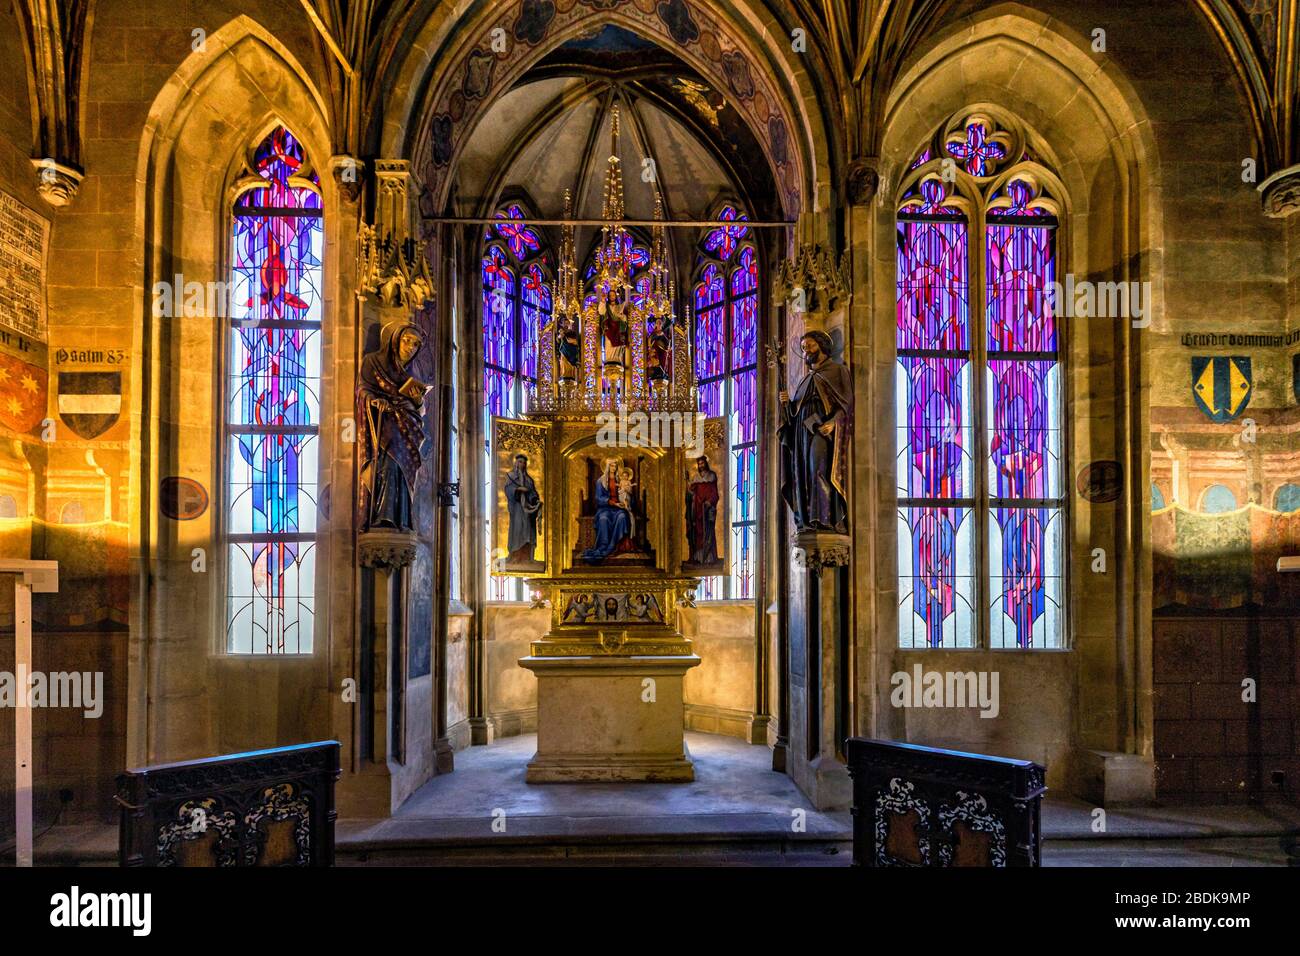 Im Inneren der gotischen Kapelle im ersten Stock des Alten Rathauses in Prag Tschechische Republik Stockfoto